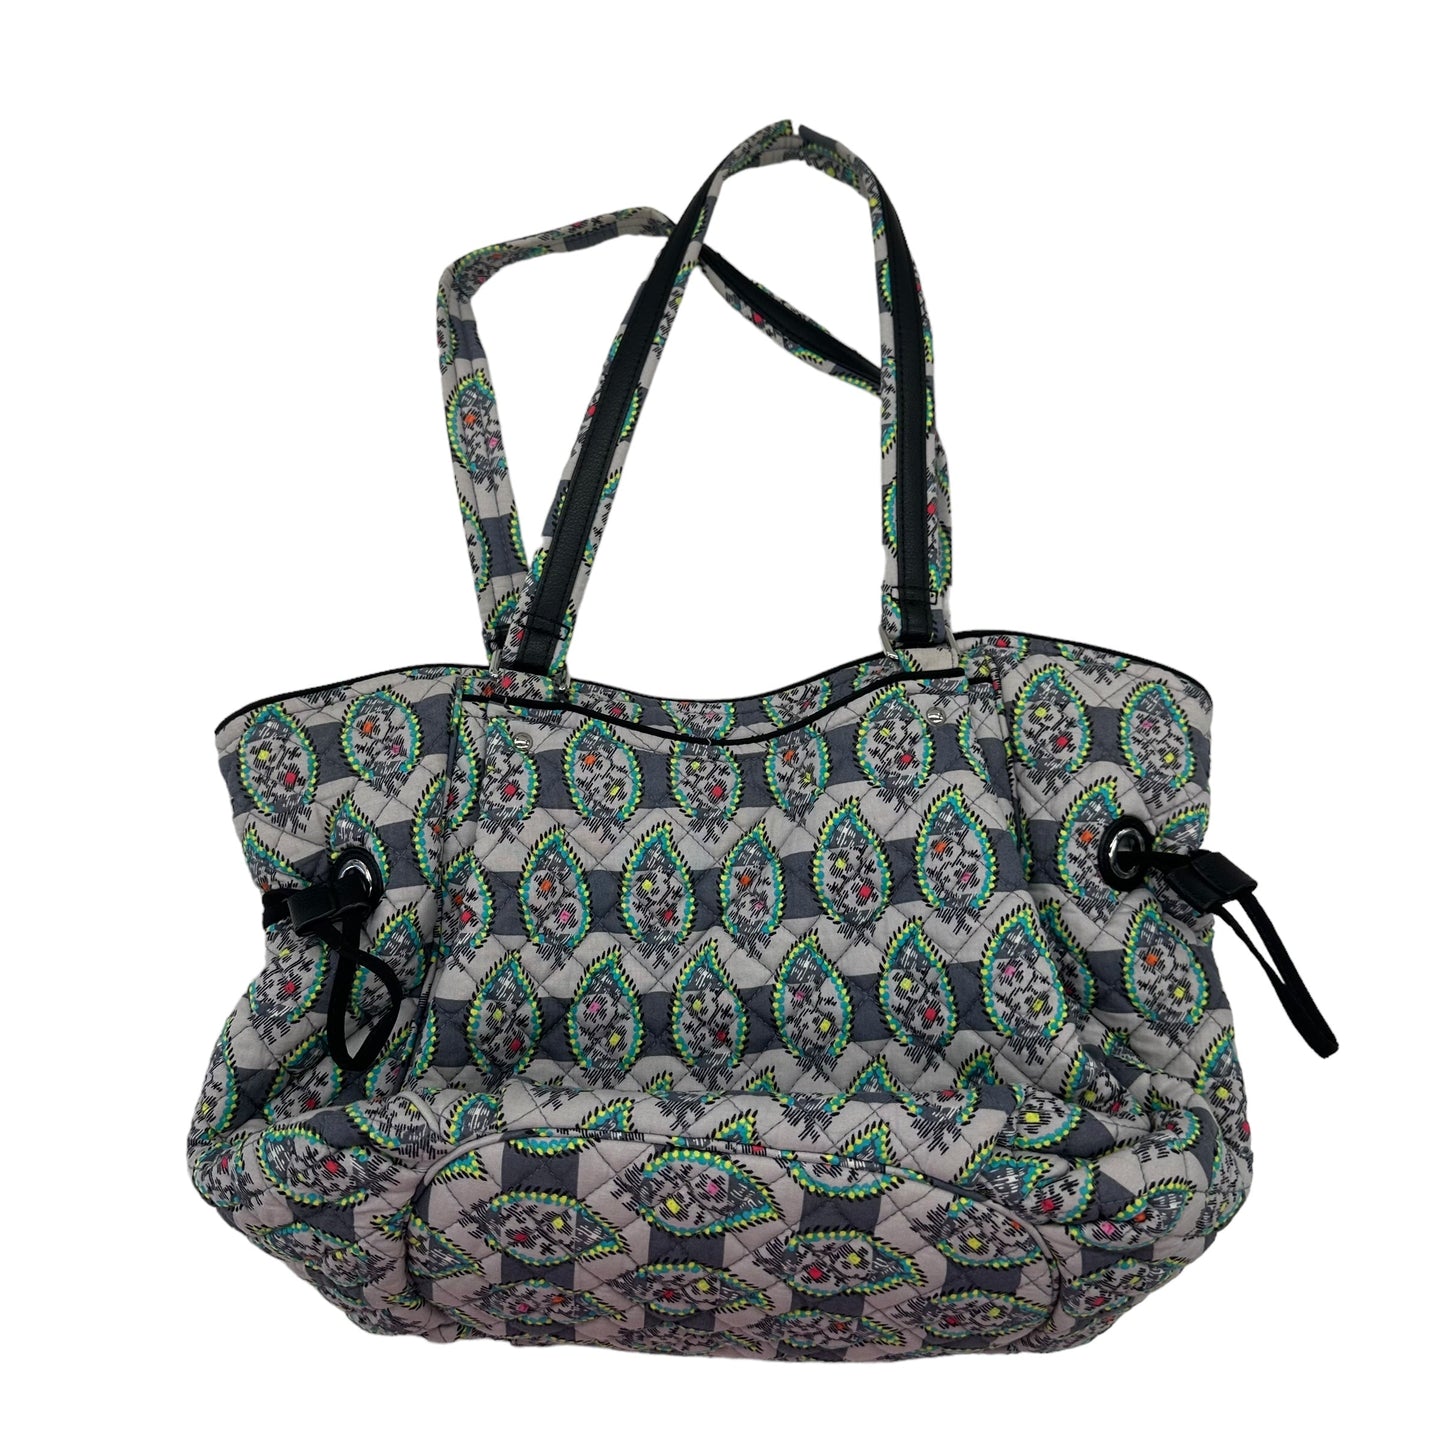 Handbag Vera Bradley, Size Medium